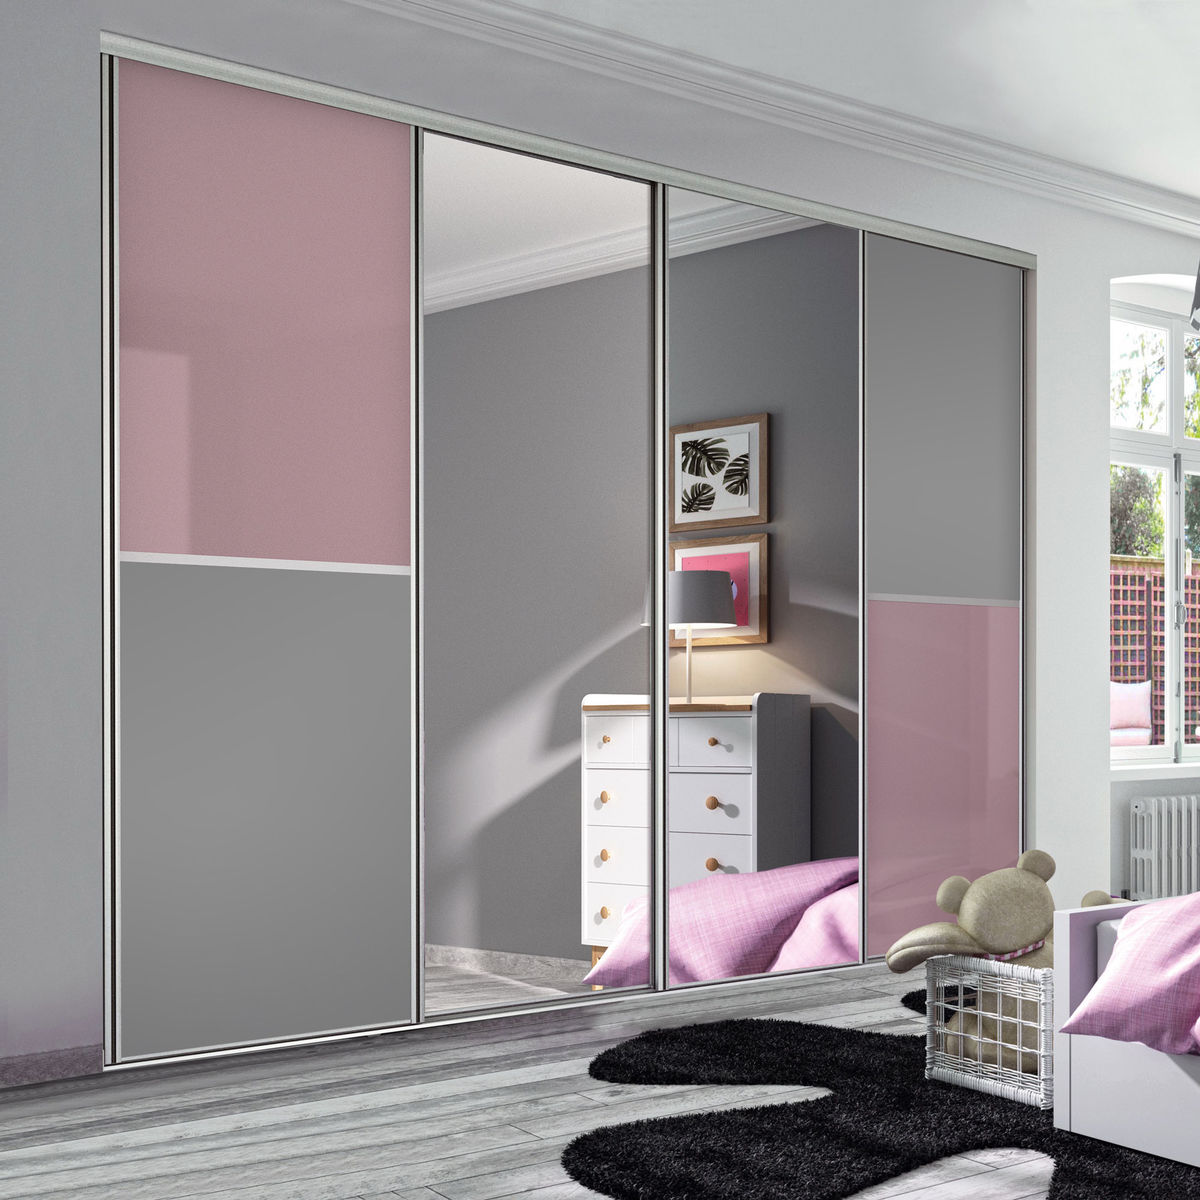 Façade de placard coulissante 4 portes verre laqué rose pastel, décor gris intense, miroir argent